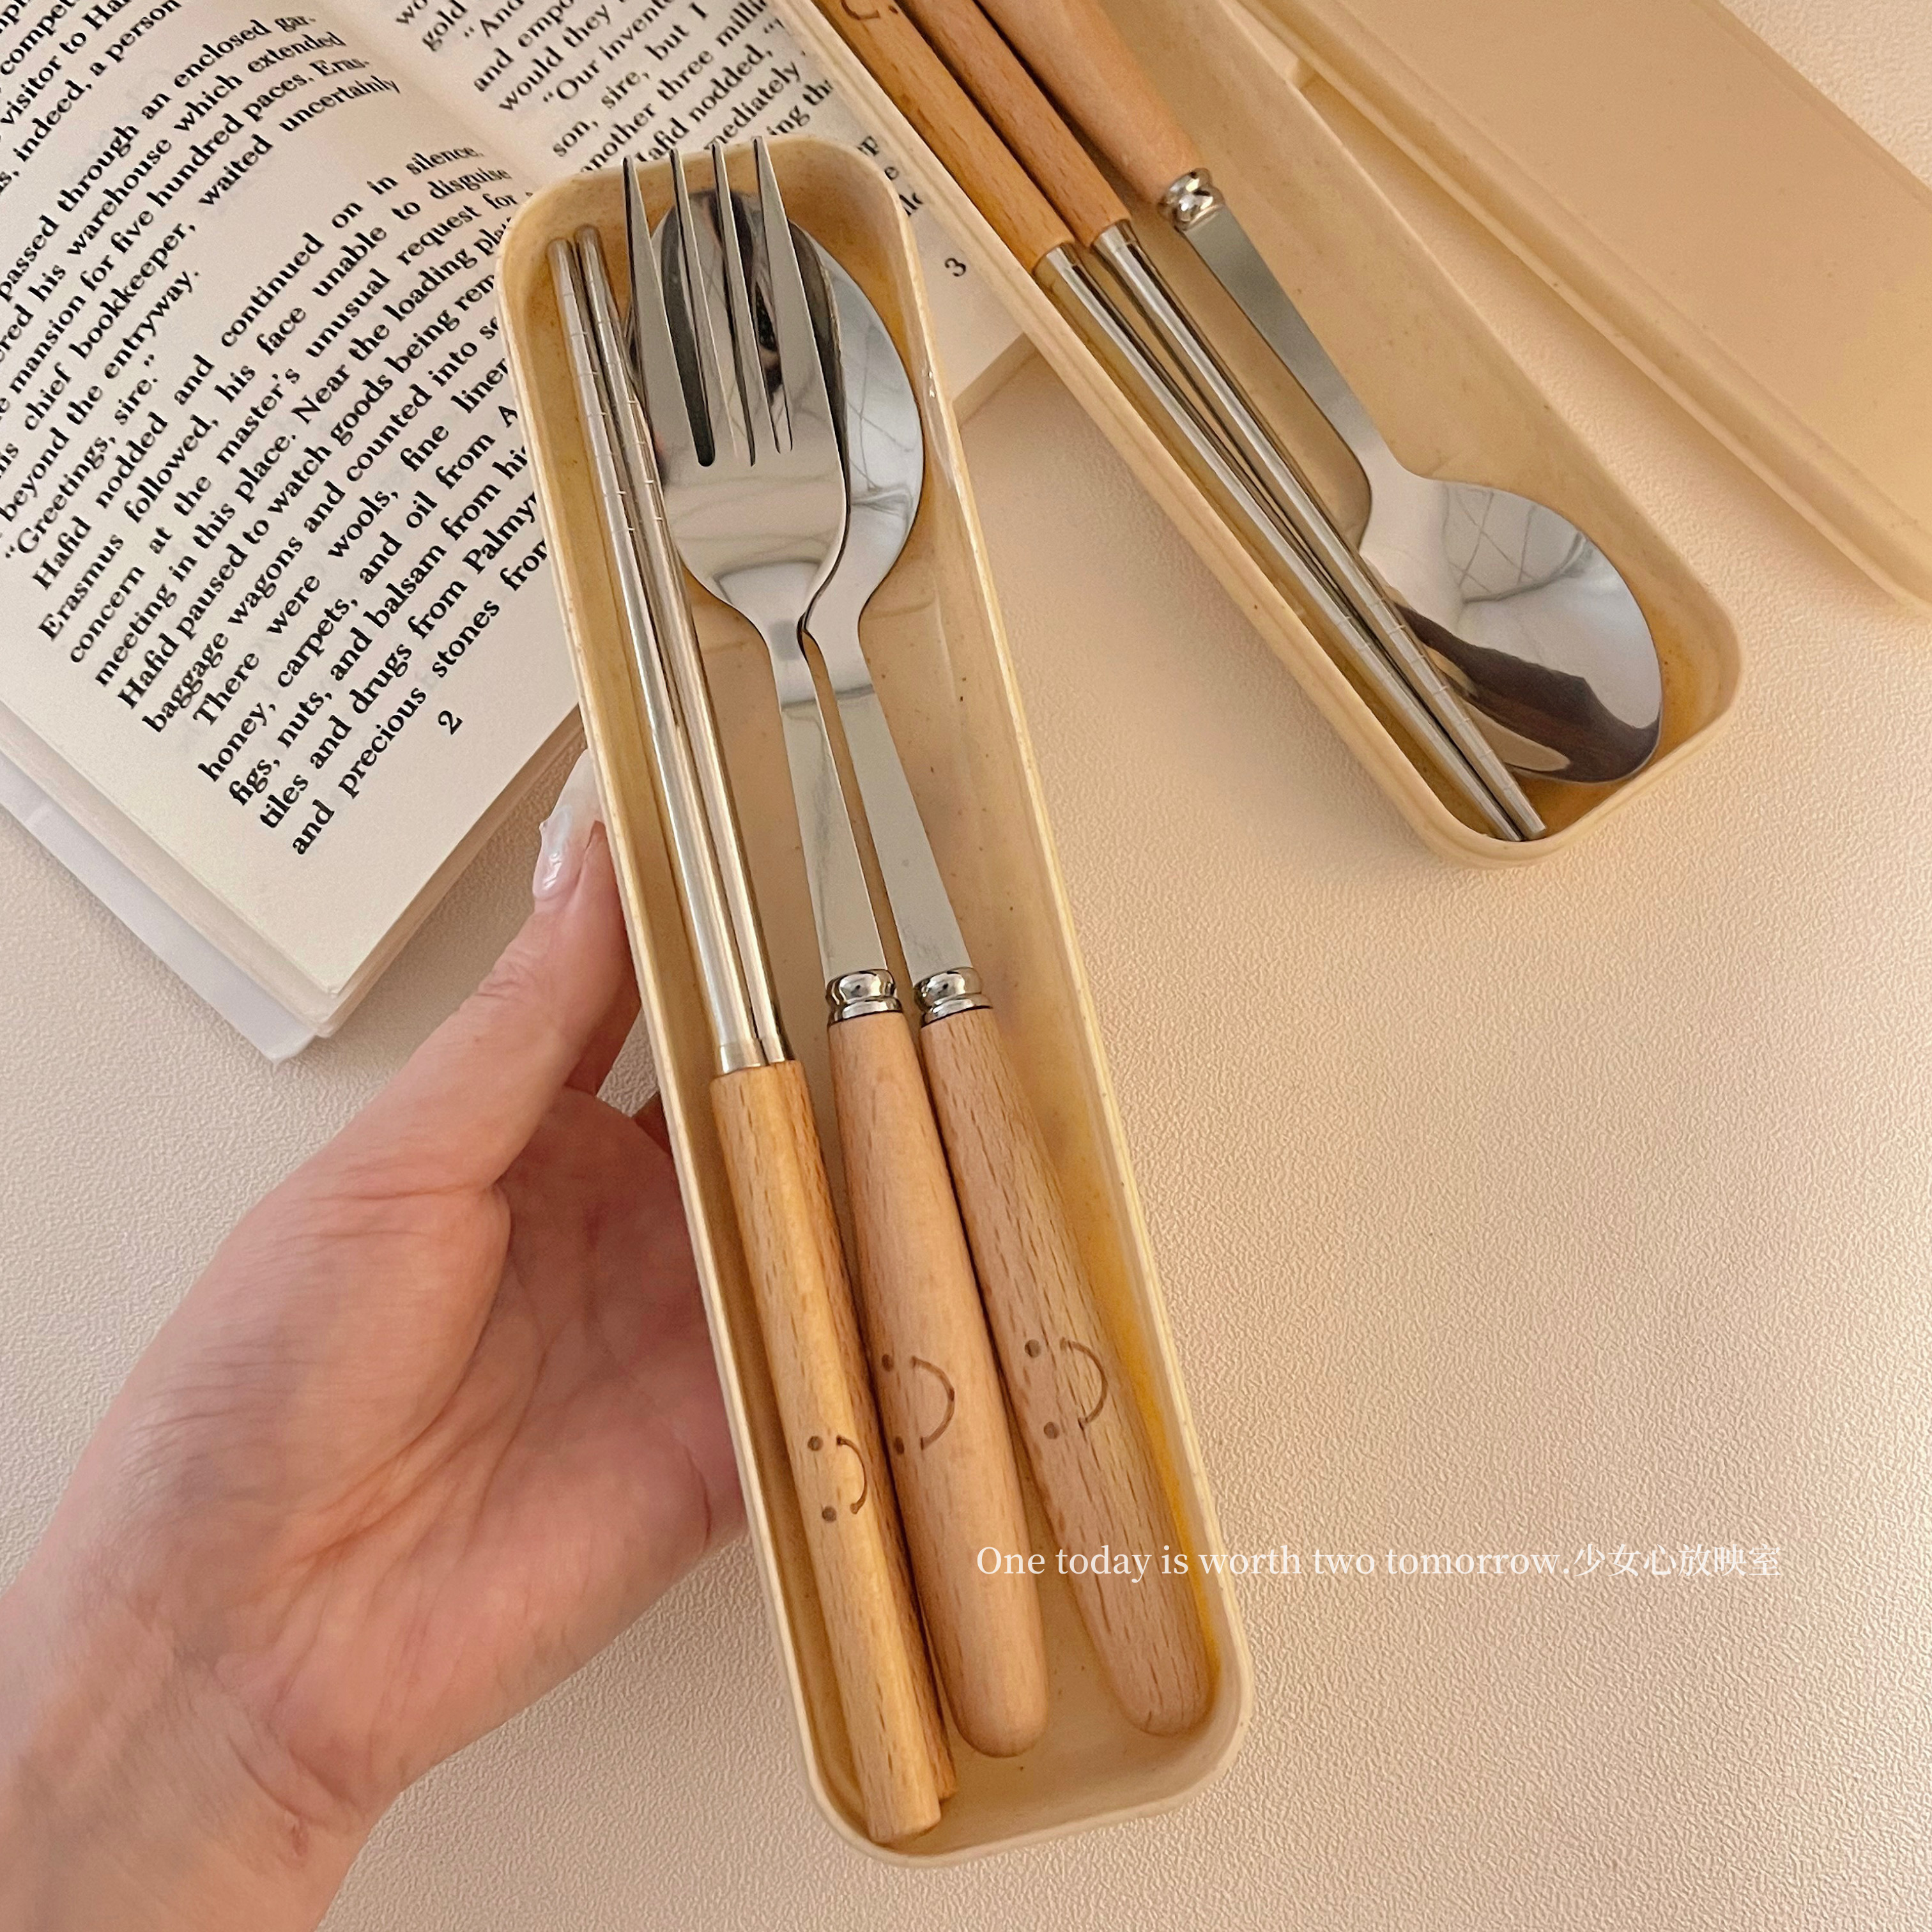 可爱笑脸筷子勺子叉子餐具套装木柄不锈钢三件套学生儿童成人便携